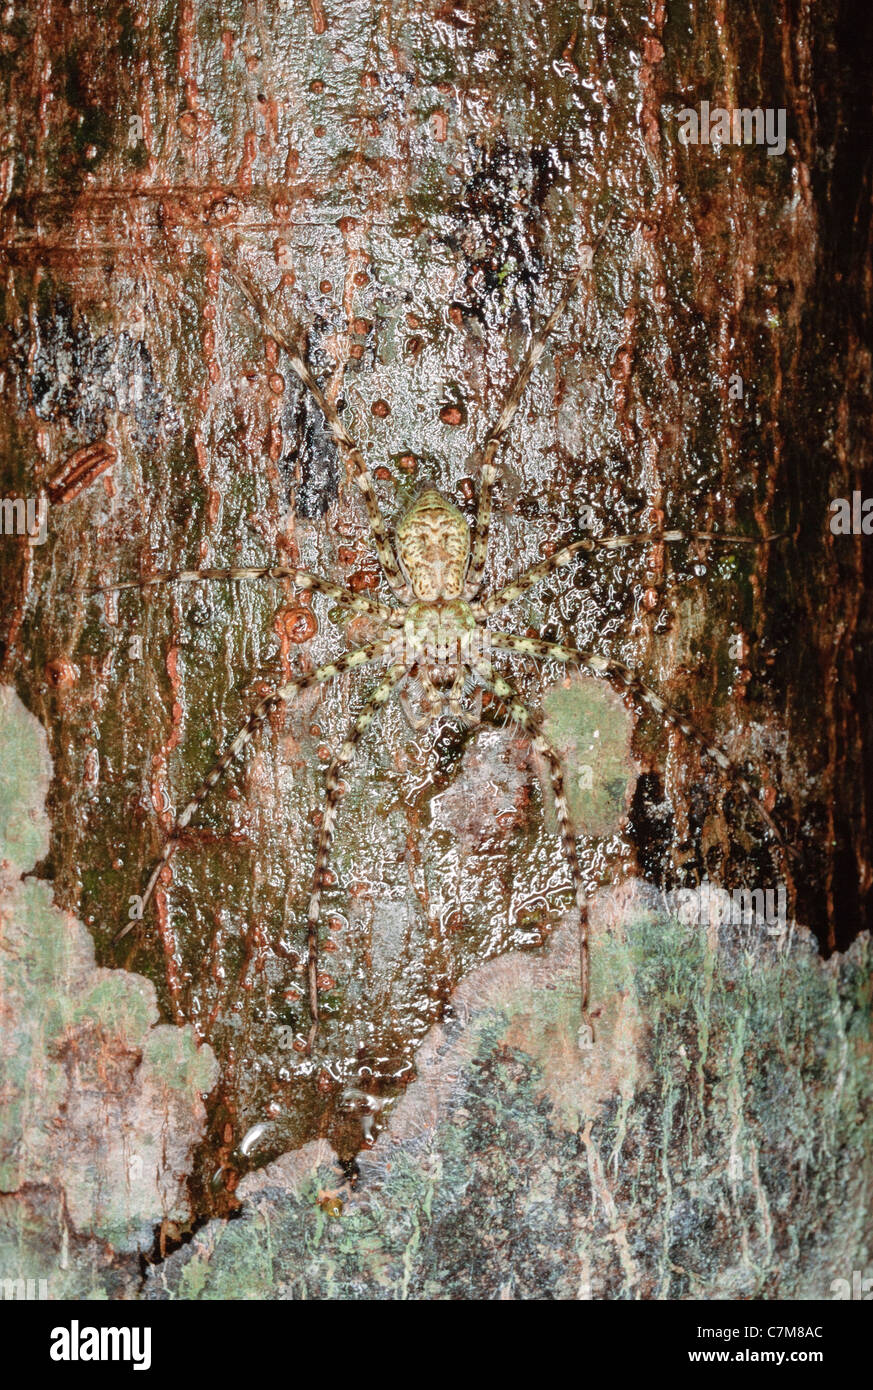 Ben mimetizzata tropical hunter spider, posa contro un albero di legno duro, Mulu National Park, Sarawak, Malaysia orientale Foto Stock